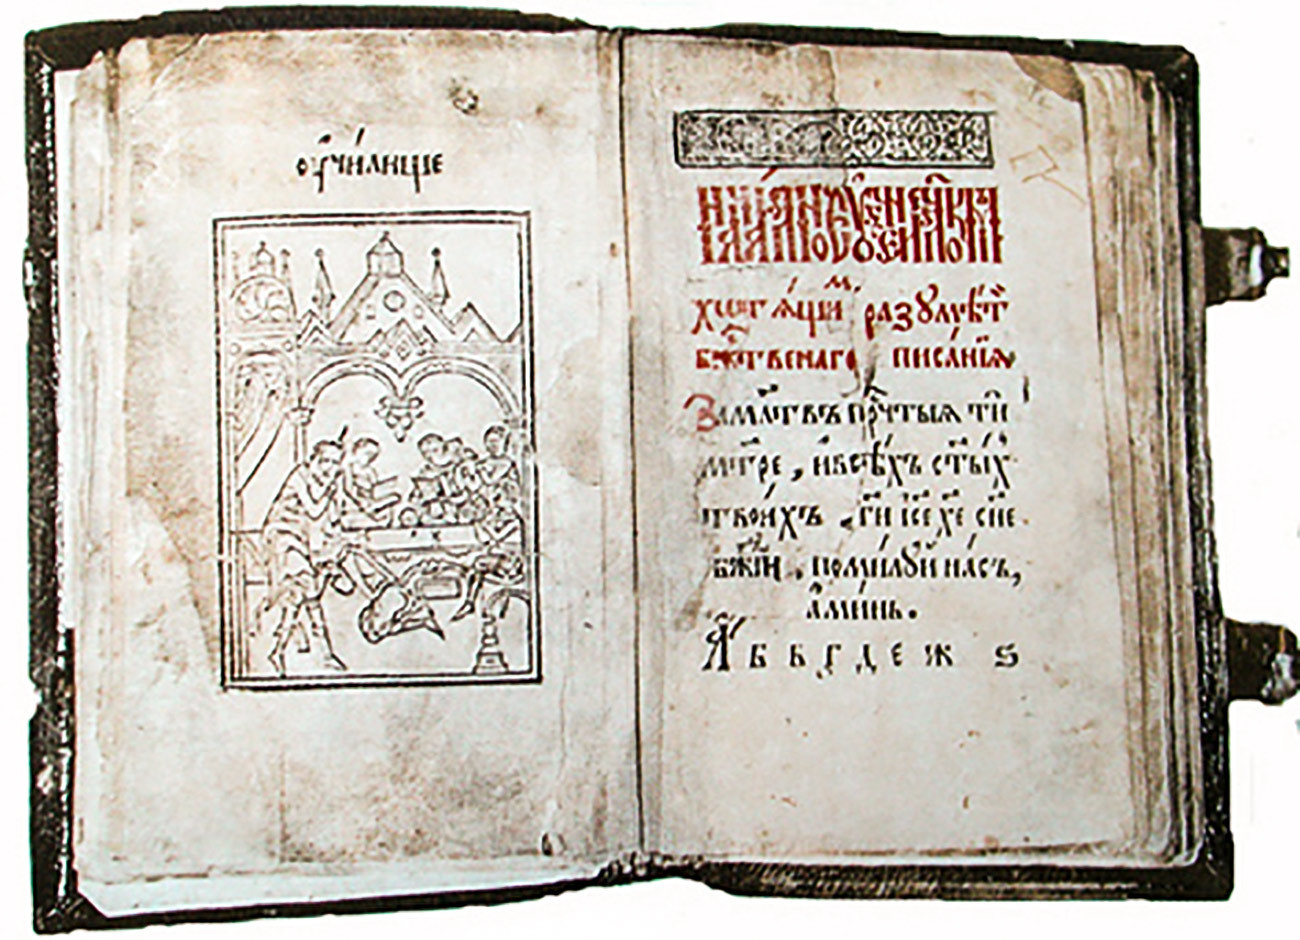 ワシリー・ブルツォフによる初等読本、1637